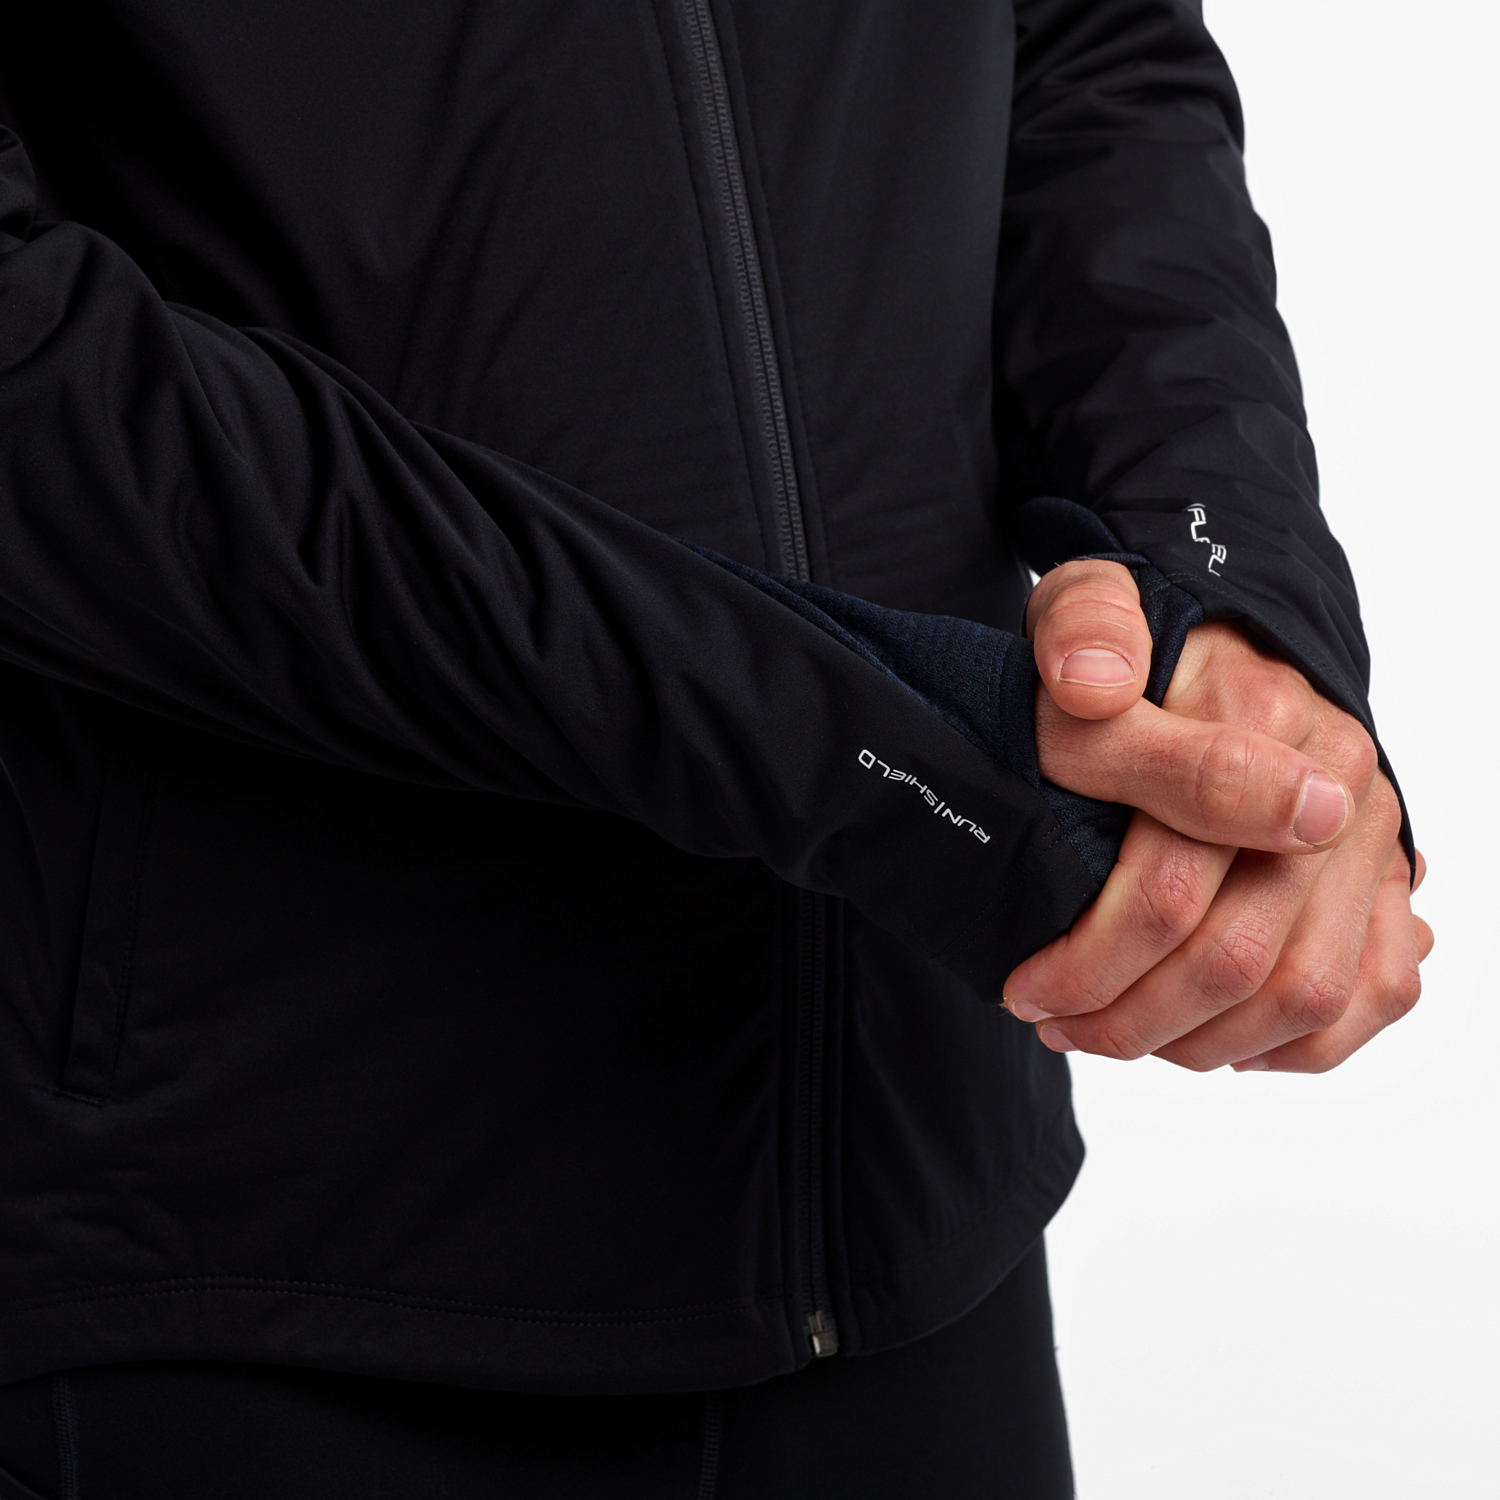 Куртка беговая Saucony 2019-20 Vitarun BK / черный